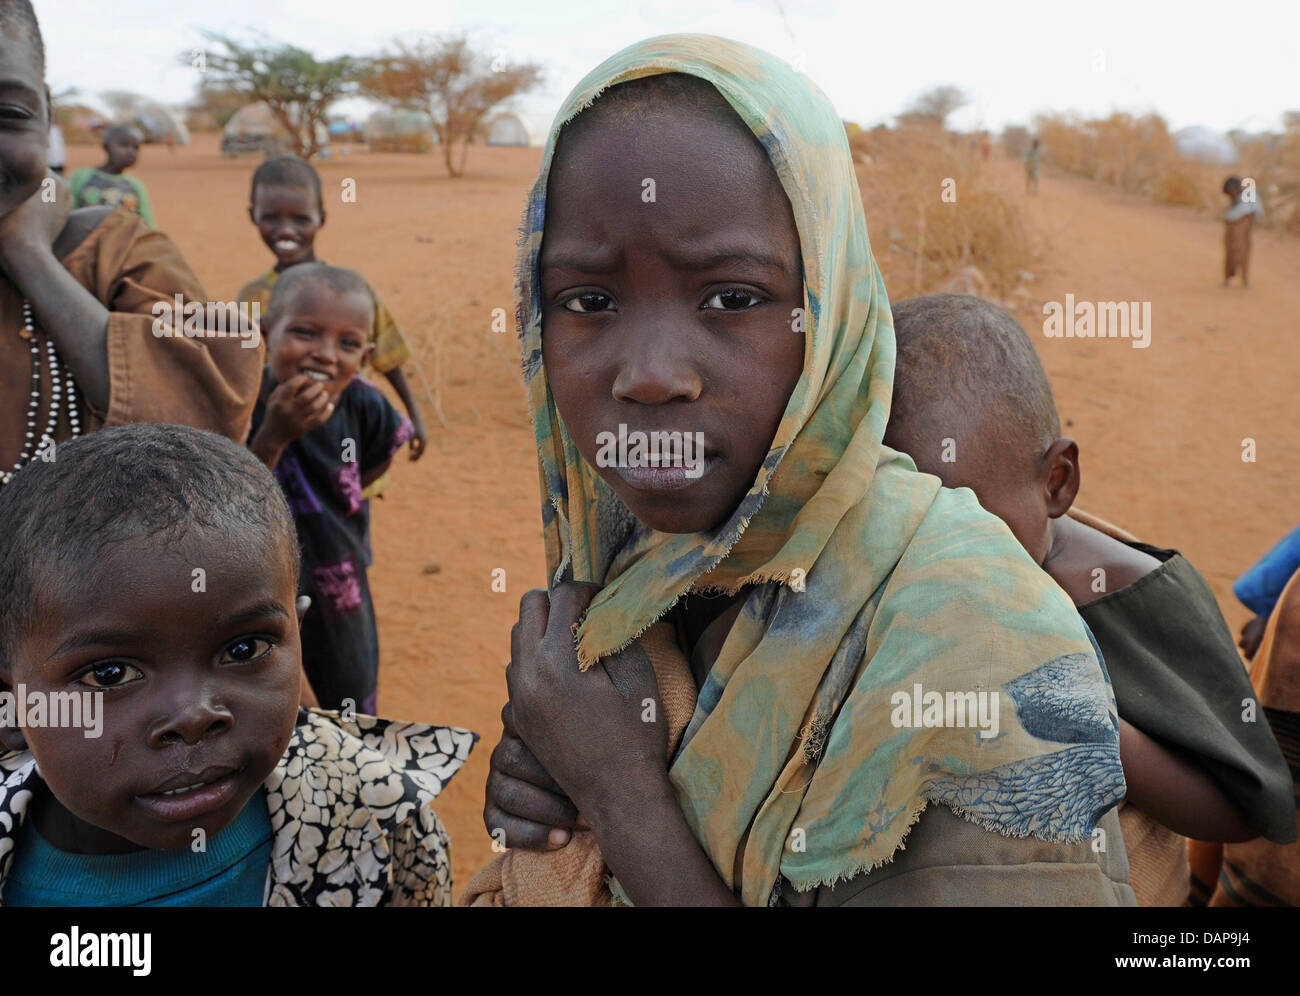 Bambini somali in attesa di ottenere un accesso a un serbatoio di acqua in un campo di rifugiati di Dadaab, Kenya 4 agosto 2011. Somalia e parti del Kenya è stata colpita da una delle peggiori le bozze e carestie in sei decenni, più di 350 000 profughi hanno trovato rifugio in mondi più grande campo di rifugiati. Foto: Boris Roessler Foto Stock